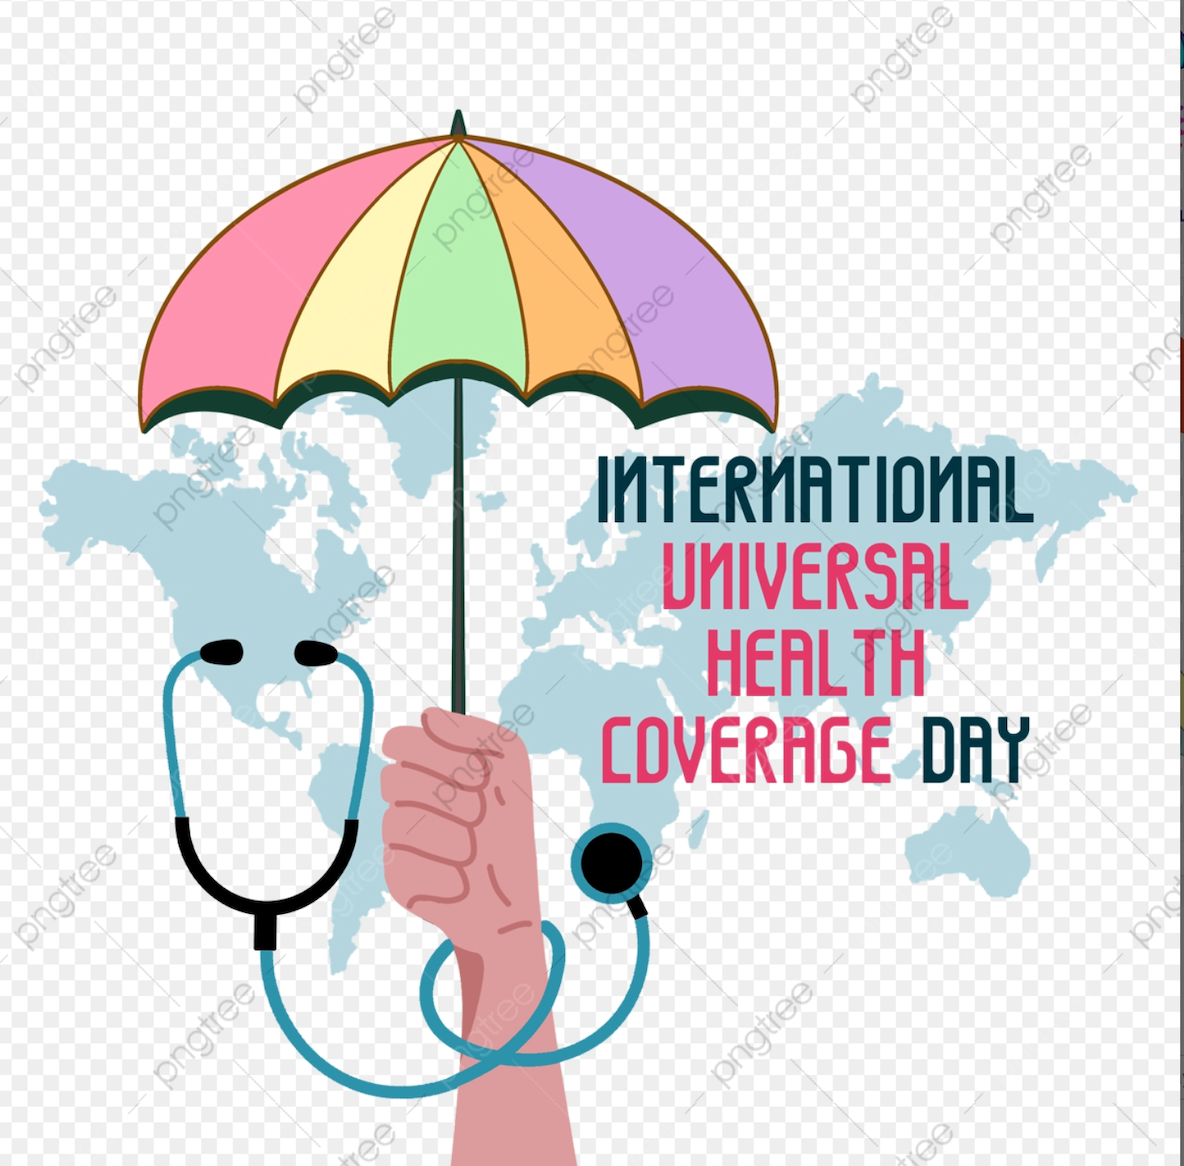 Сомали празднует День всеобщего охвата услугами здравоохранения: воплощение мечты о “здоровье для всех” в реальность